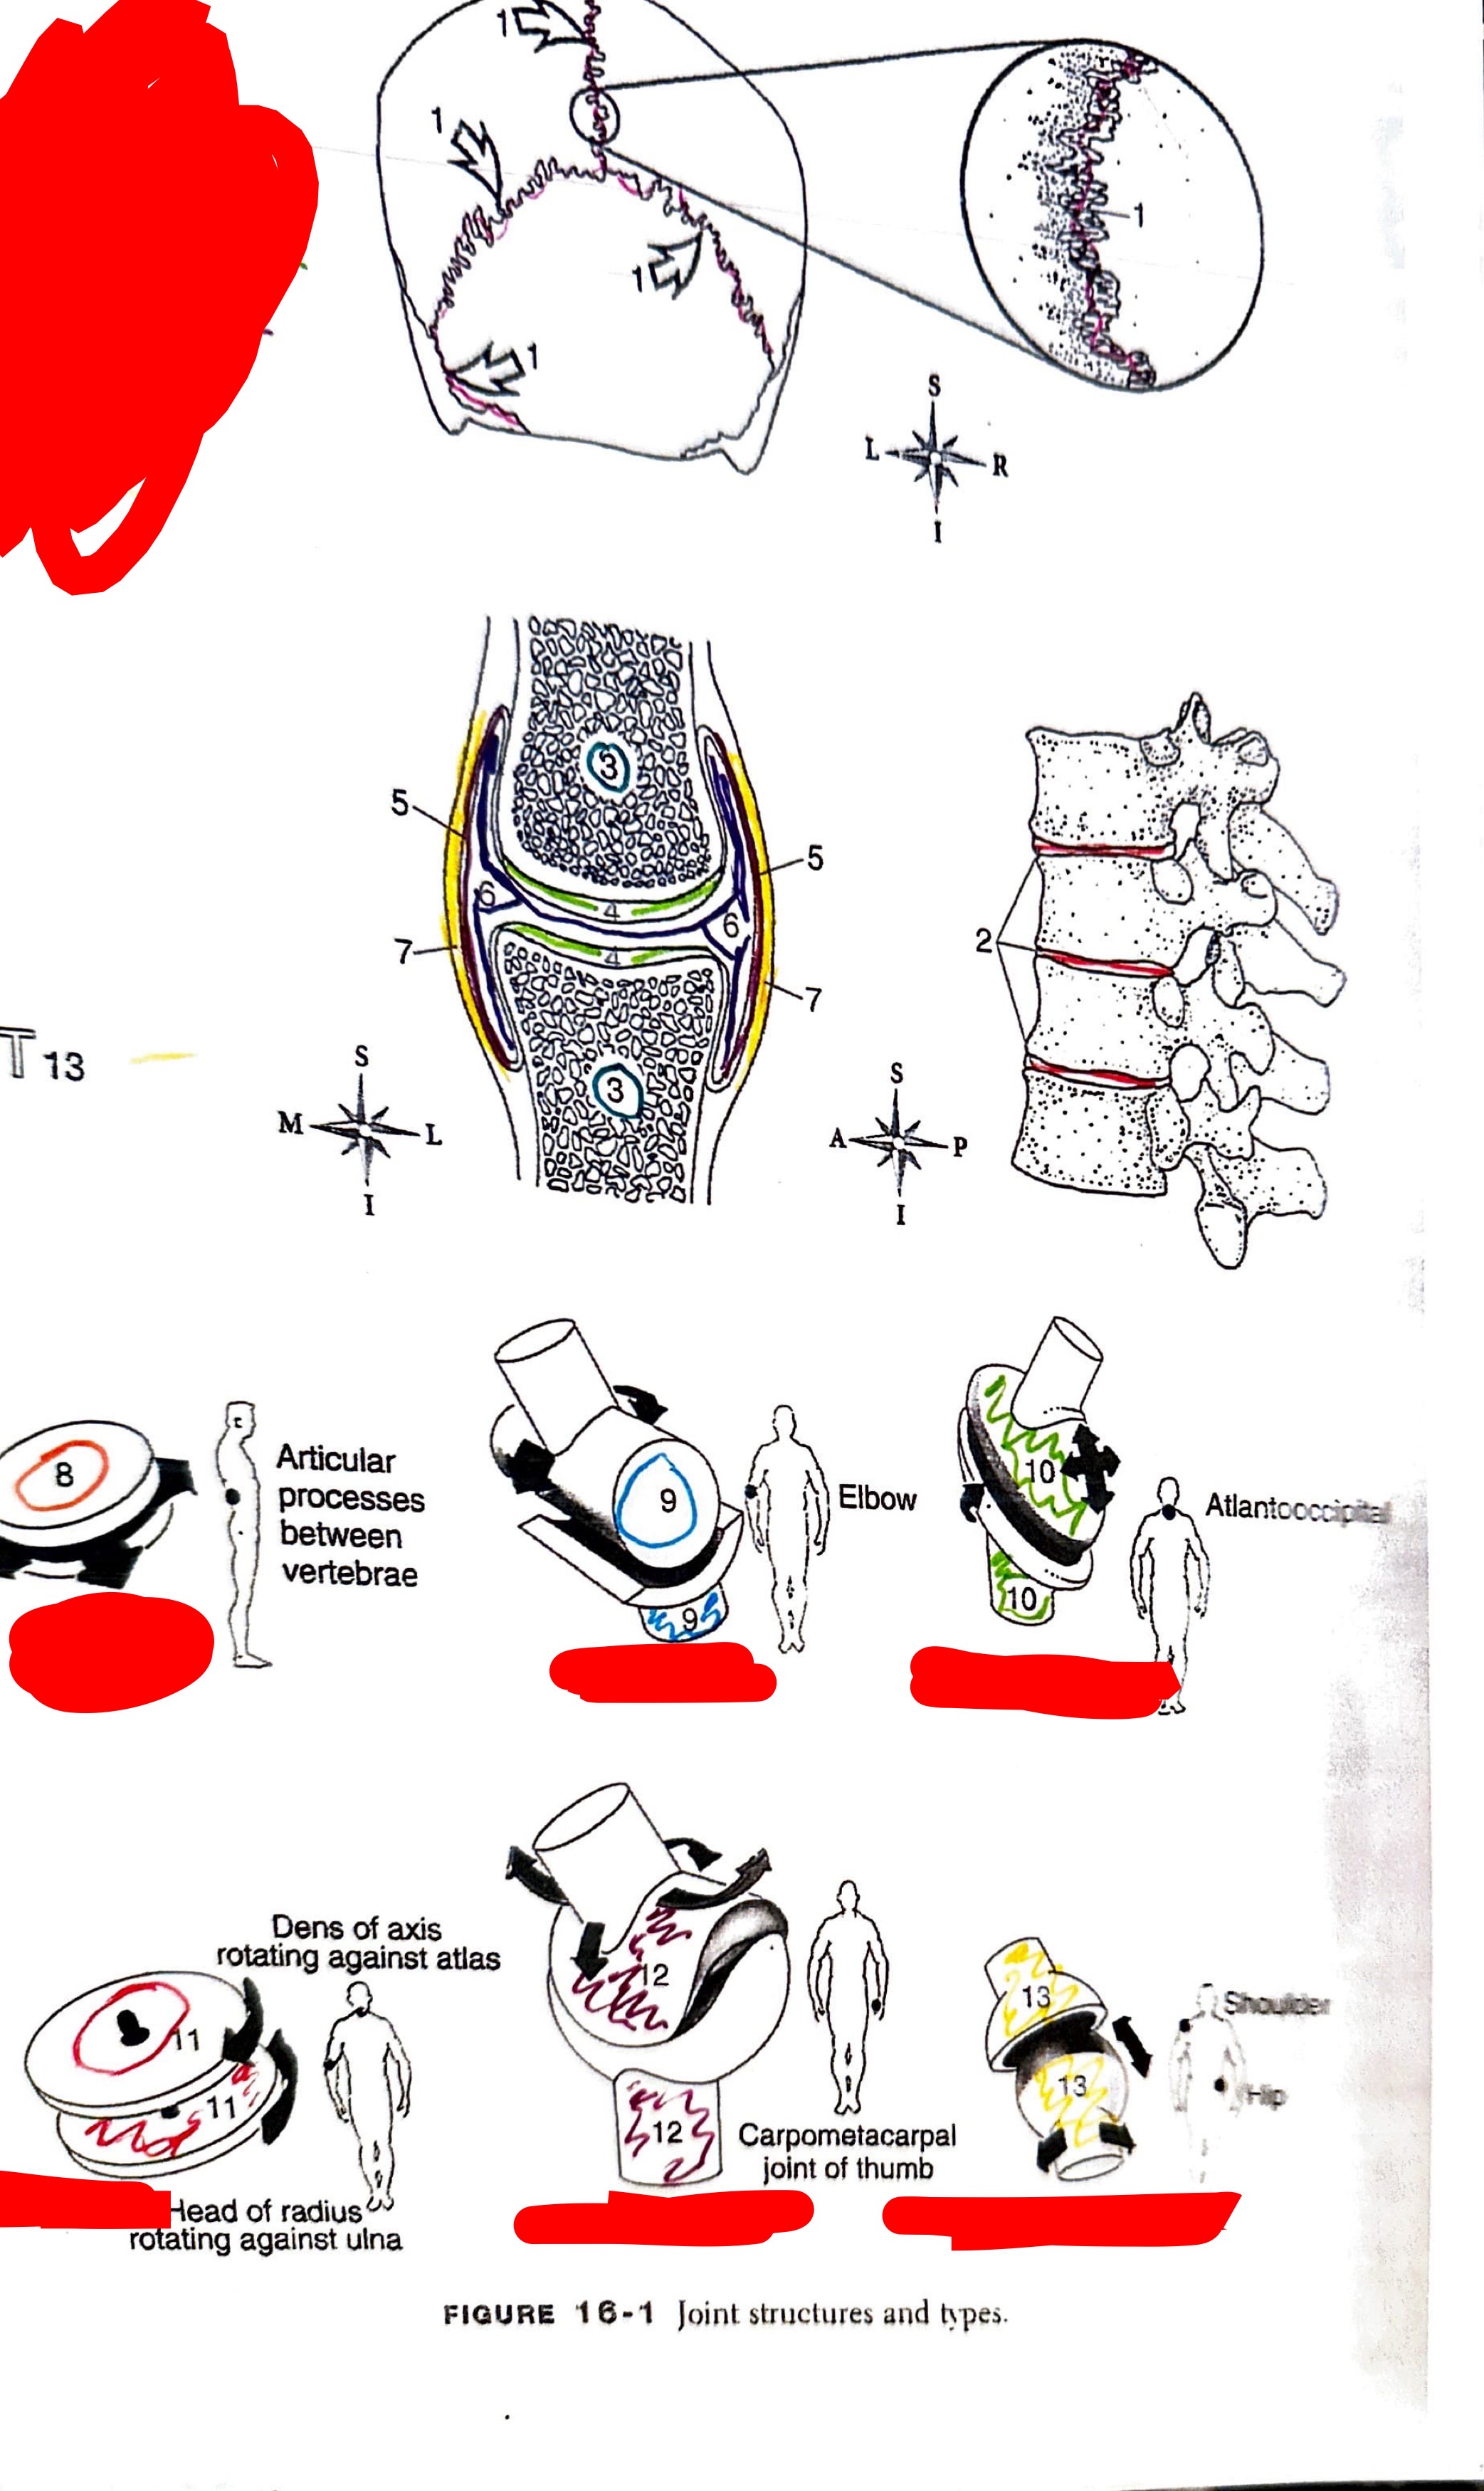 <ol><li><p>fibrous joint</p></li><li><p>cartilaginous joint</p></li><li><p>articulating bone</p></li><li><p>articular cartilage</p></li><li><p>synovial membrane</p></li><li><p>synovial cavity</p></li><li><p>synovial capsule</p></li><li><p>gliding</p></li><li><p>hinge</p></li><li><p>ellipsoid</p></li><li><p>pivot</p></li><li><p>saddle</p></li><li><p>ball and socket</p></li></ol>